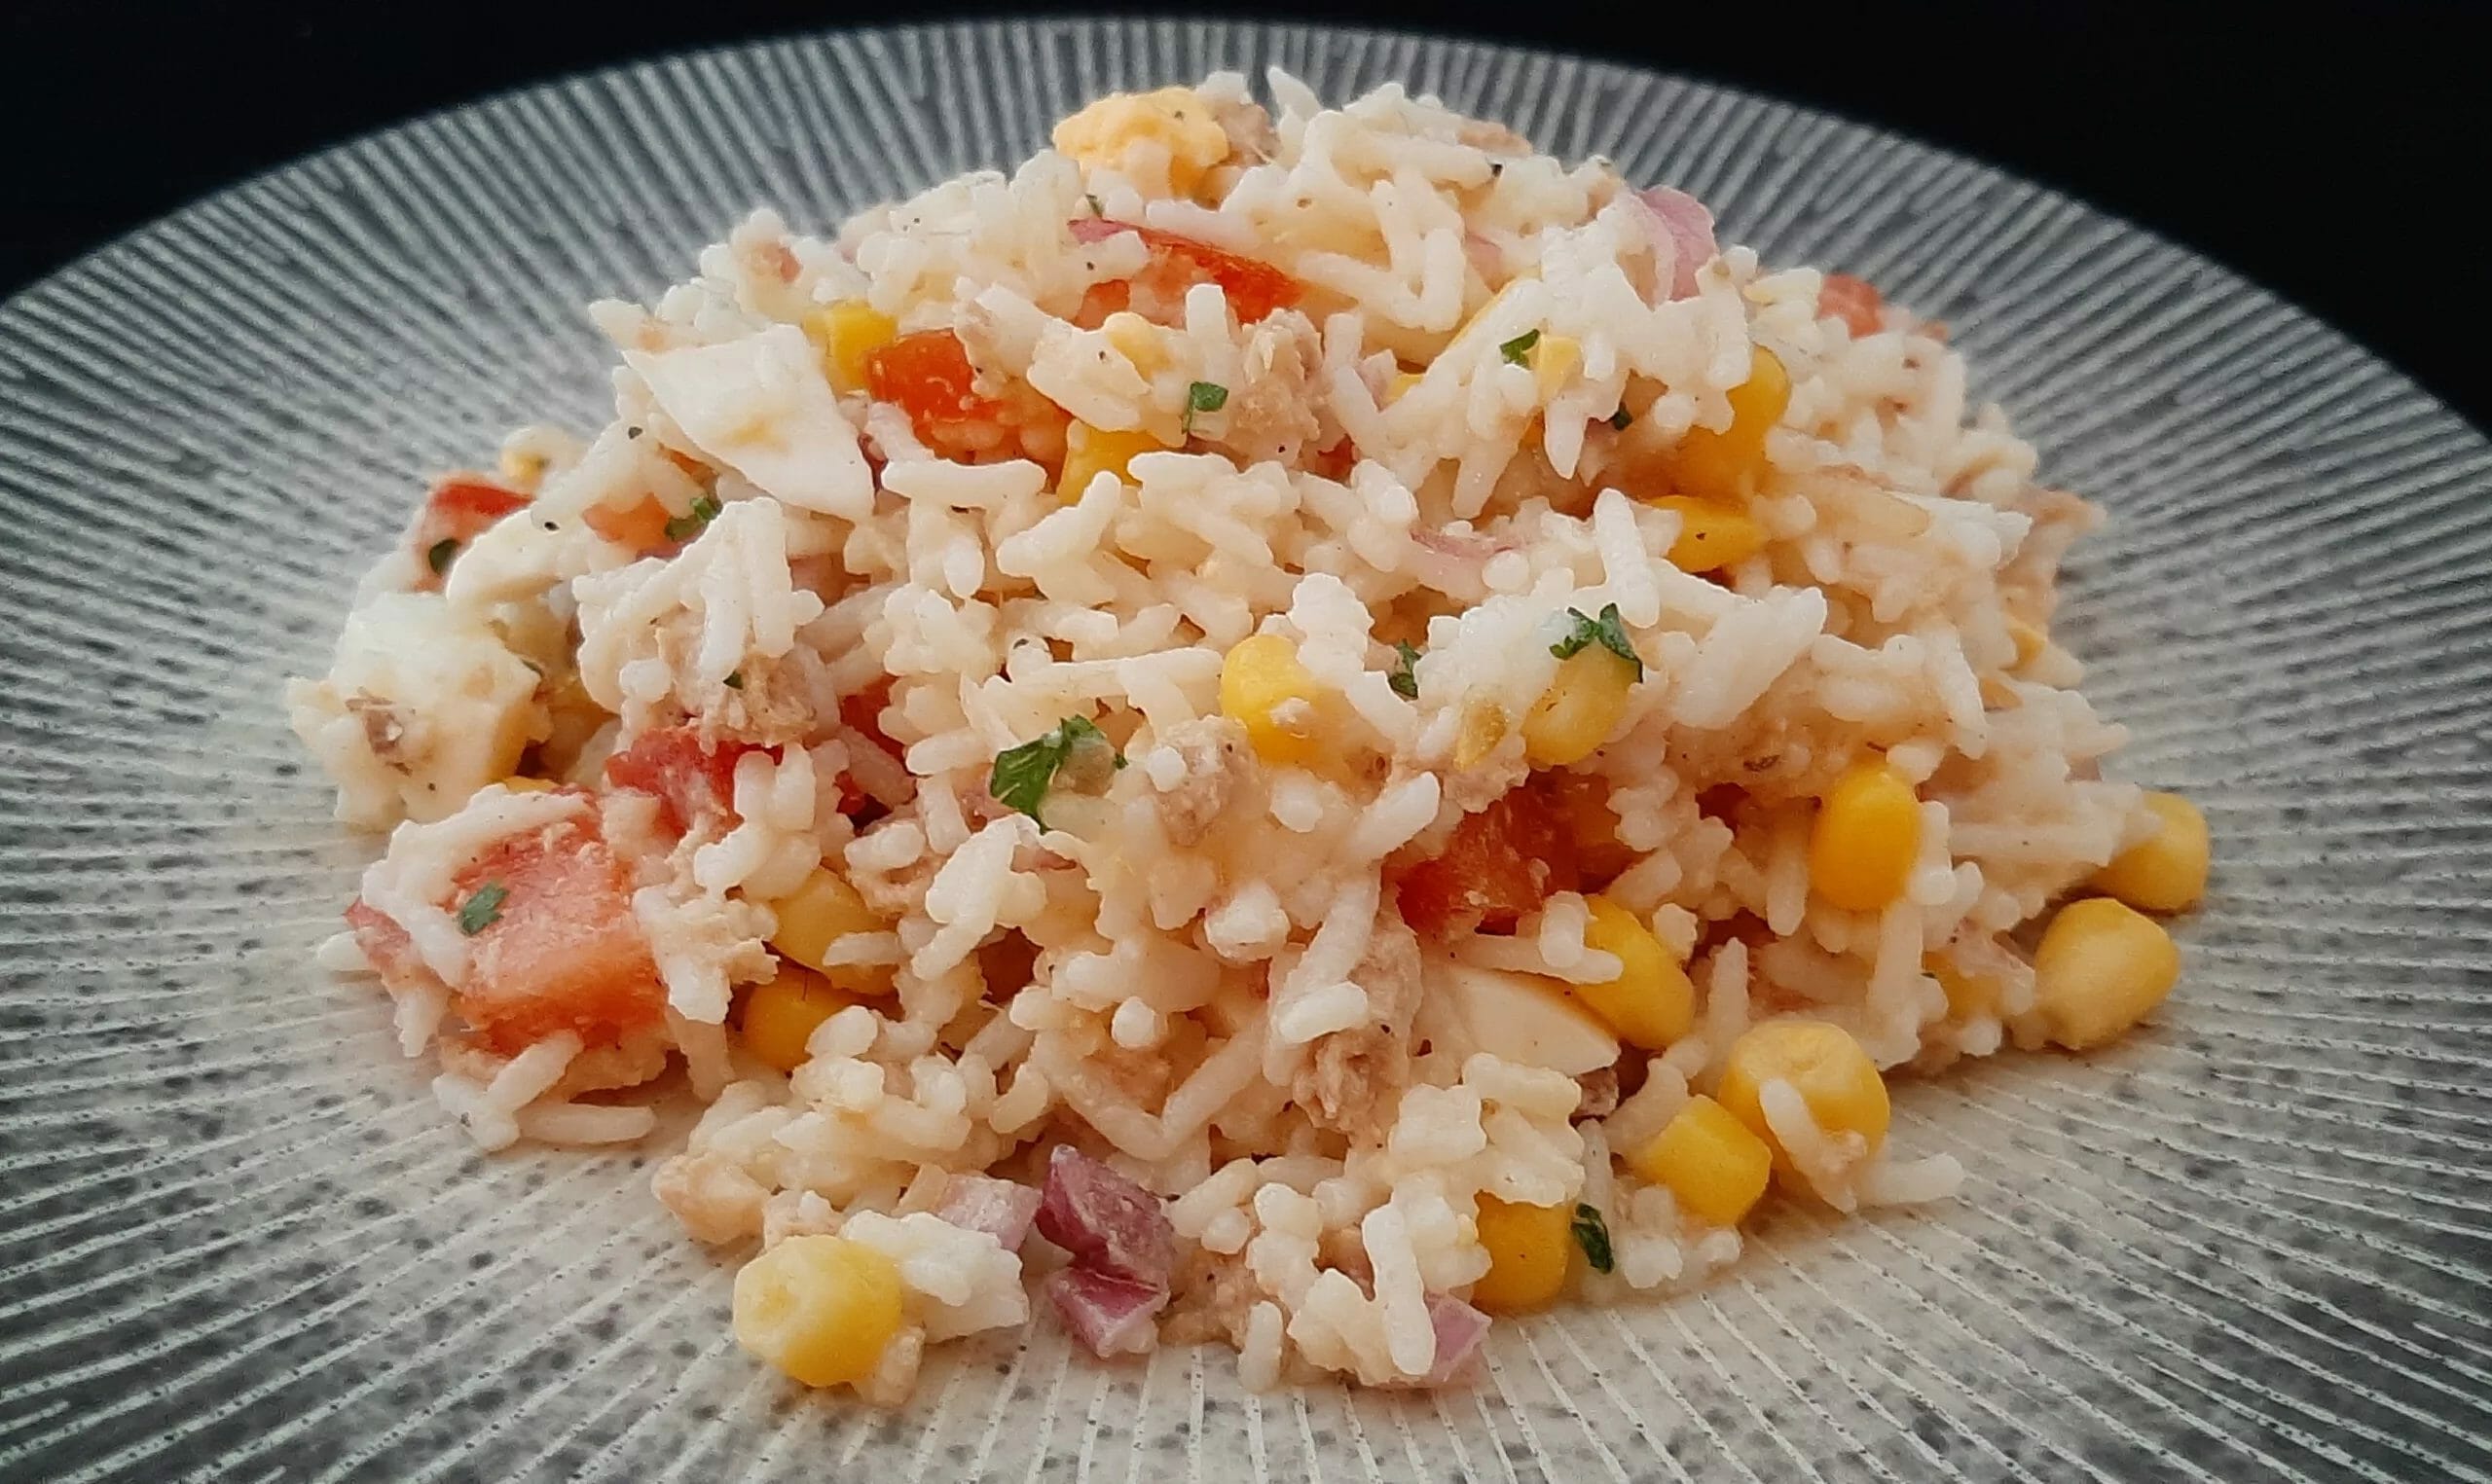 Comment préparer une salade froide de riz au thon, tomates et maïs ?